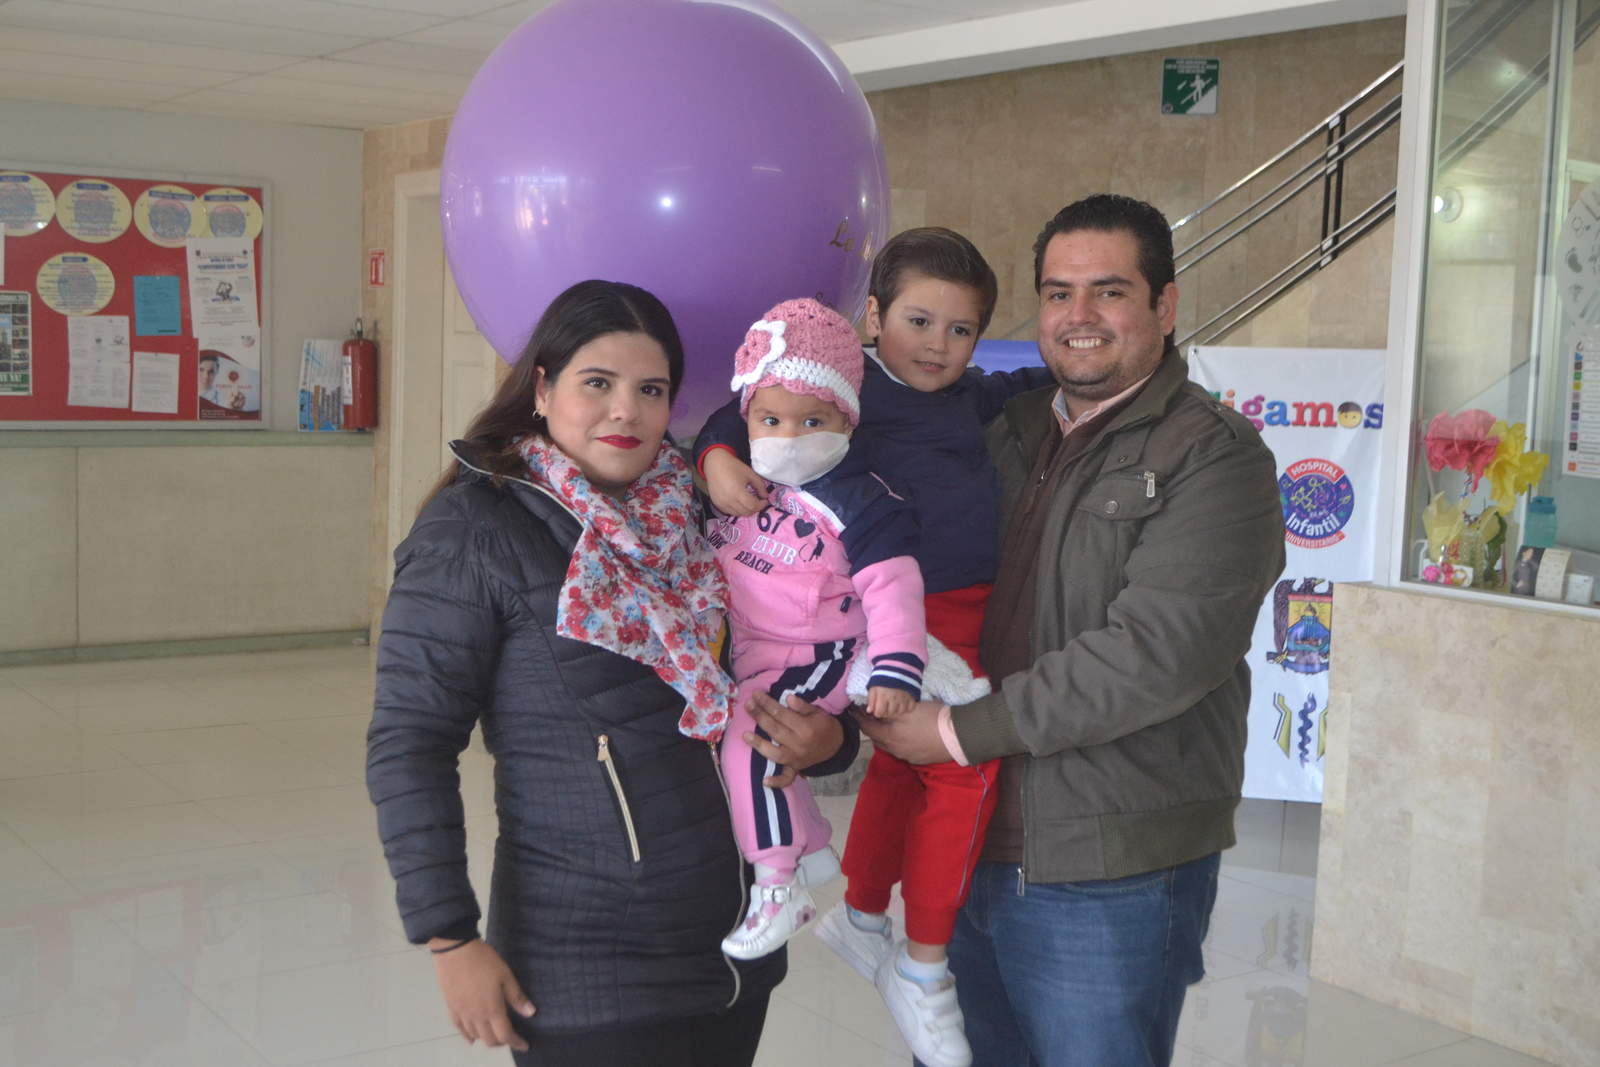 La paciente, originaria de esta ciudad, fue diagnosticada a los ocho meses de nacida con leucemia linfoblástica. (ANGÉLICA SANDOVAL)